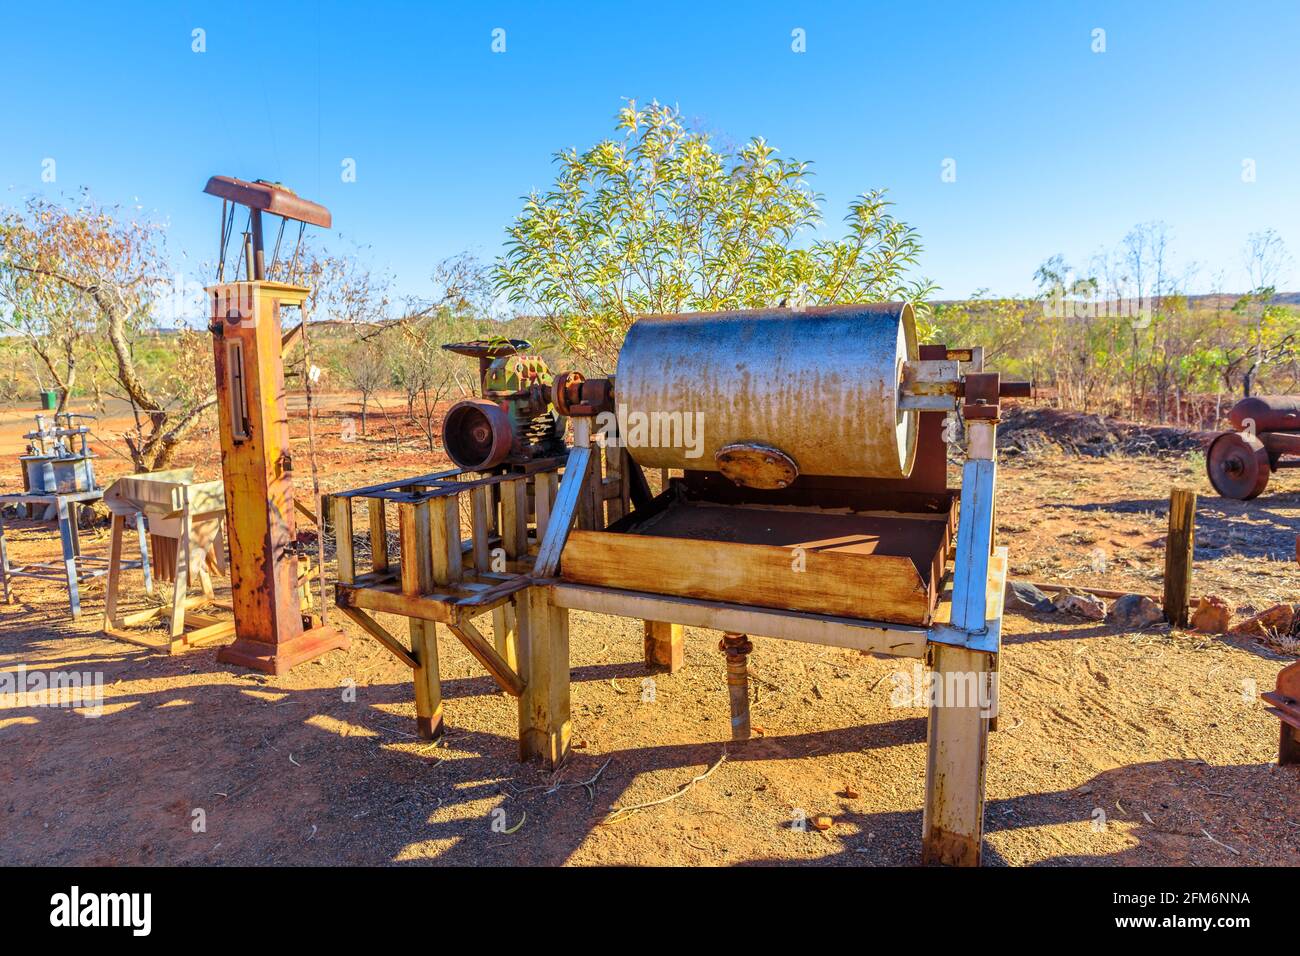 Usine de lavage d'or du Battery Hill Mining Centre, Tennant Creek, territoire du Nord, Australie centrale. Ancienne mine souterraine, est maintenant un touriste célèbre Banque D'Images